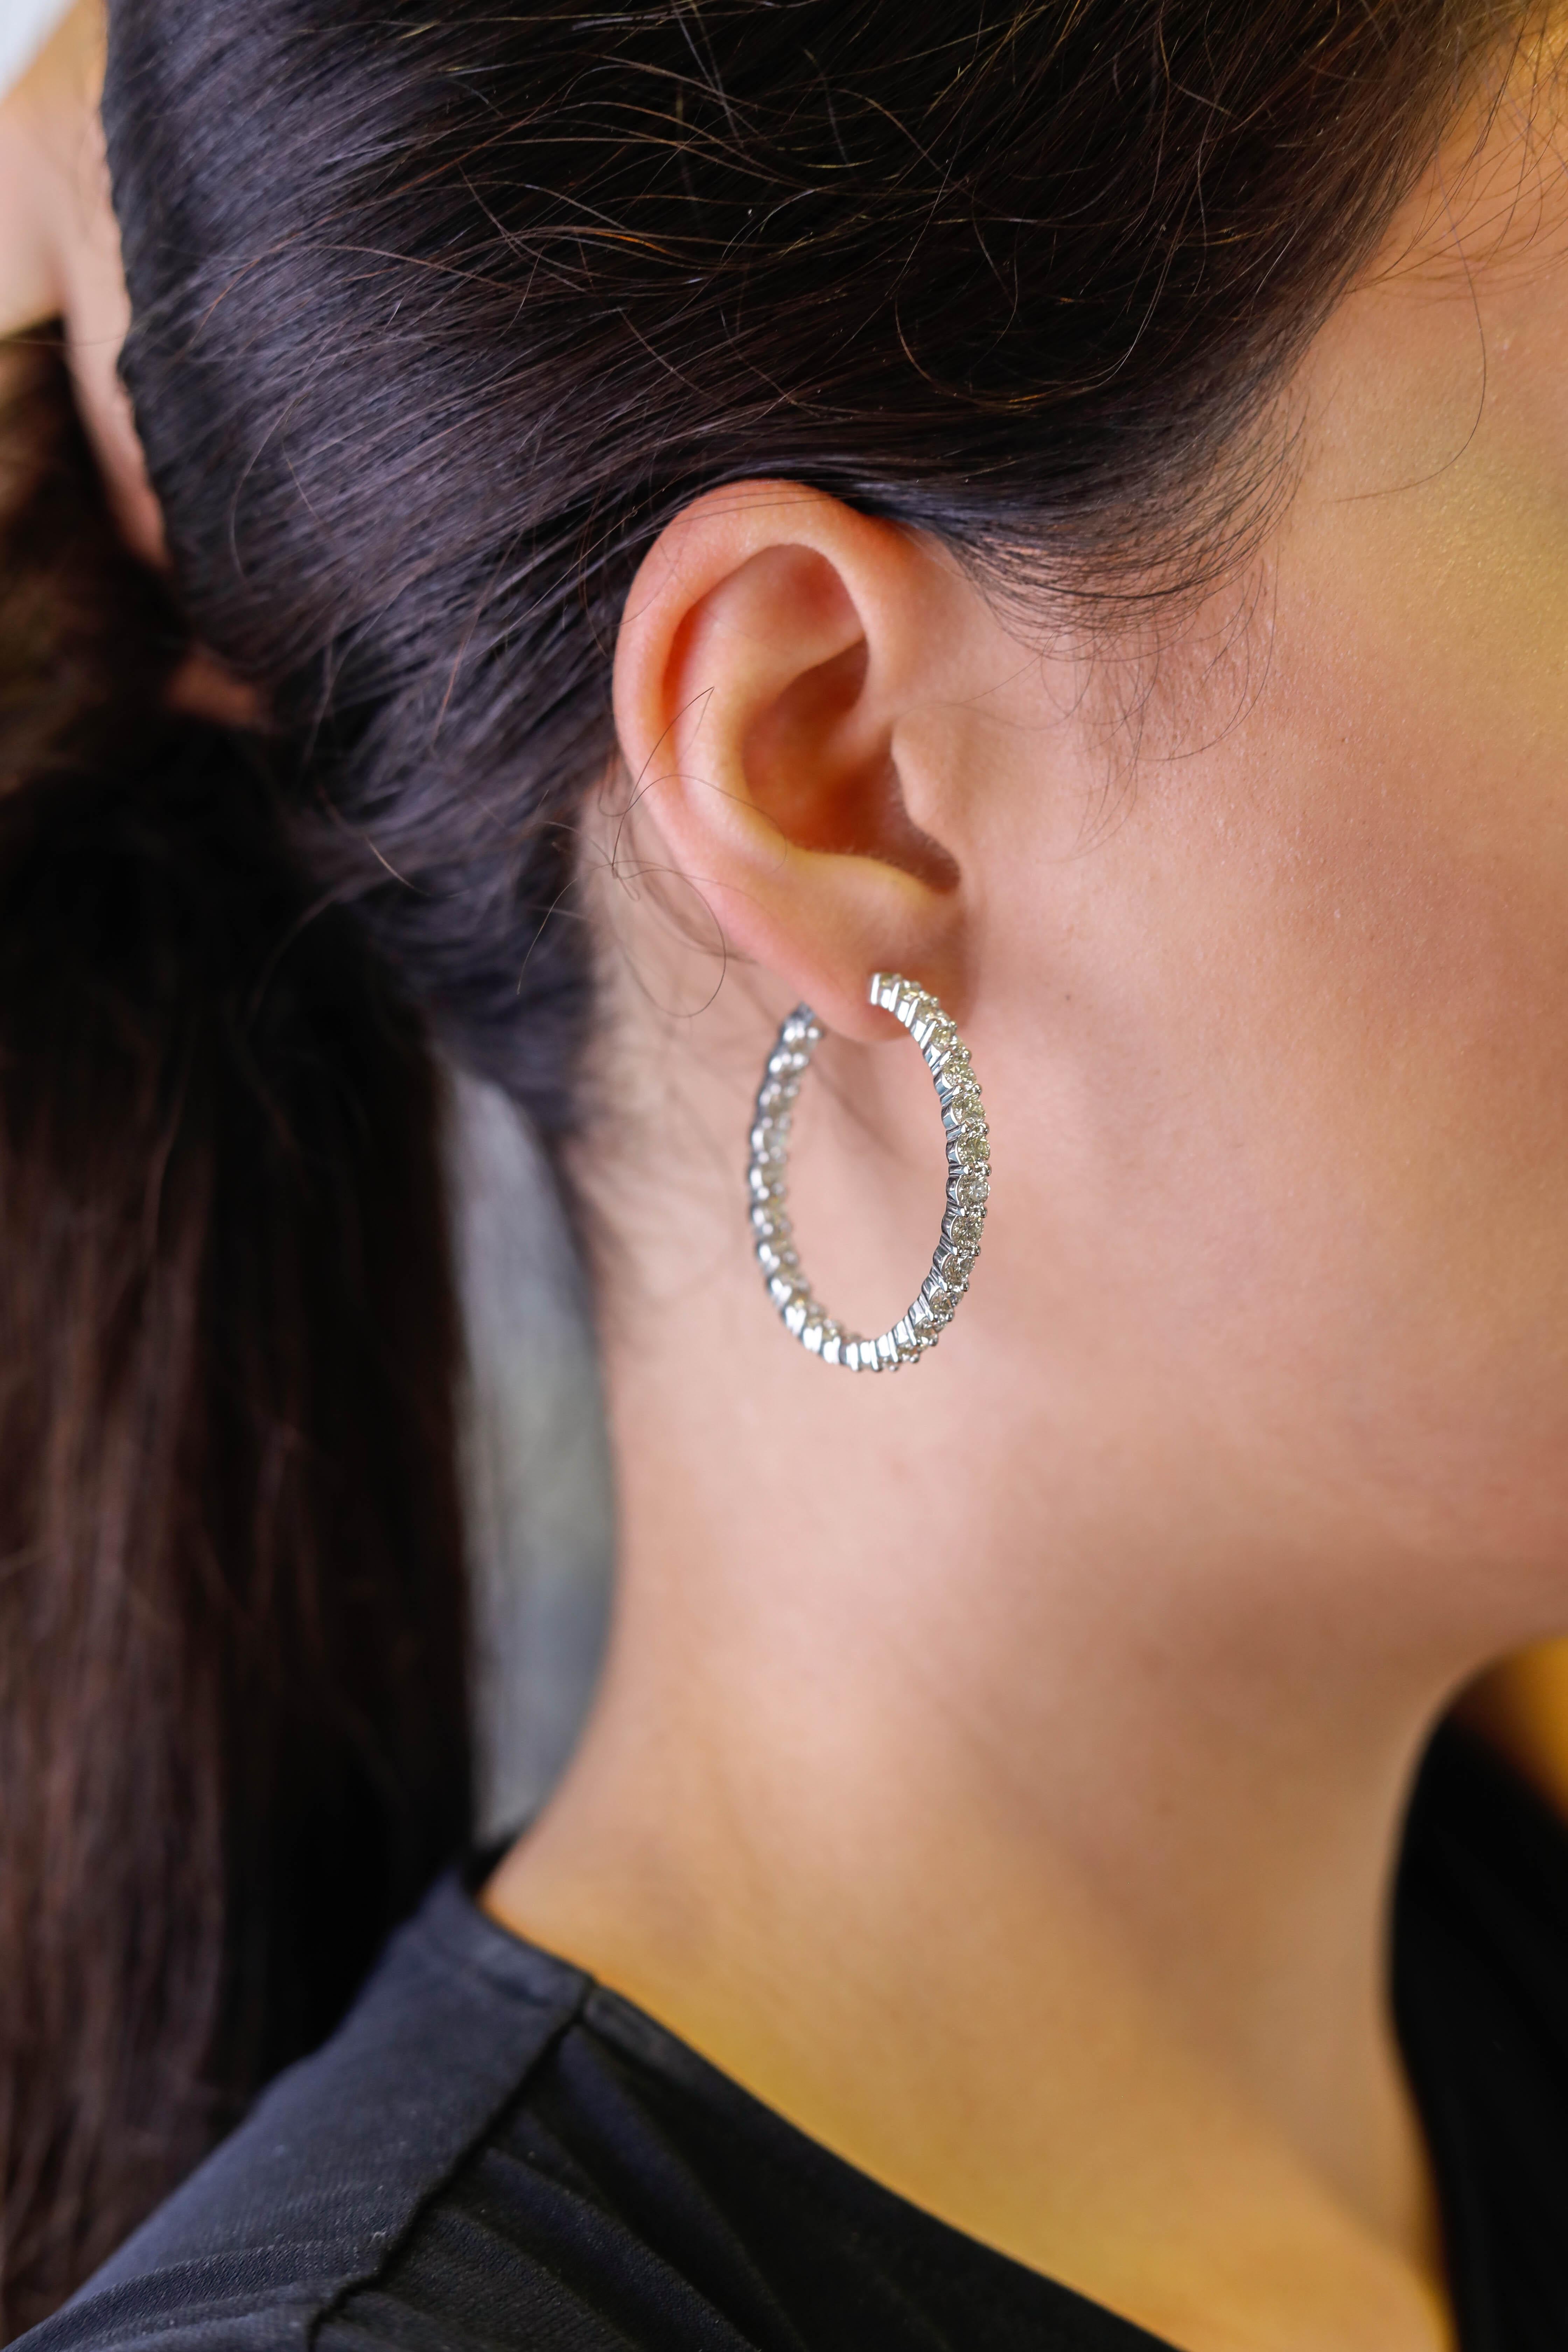 18 Karat Weißgold Runder Brillantschliff 8,0 Karat Diamant-Reifen-Ohrringe Schmuck

Das perfekte Geschenk zum Jahrestag für sie. Ein klassisches und elegantes Design. Präsentiert Sie (Anzahl der Steine) runde Diamanten von hoher Qualität, insgesamt